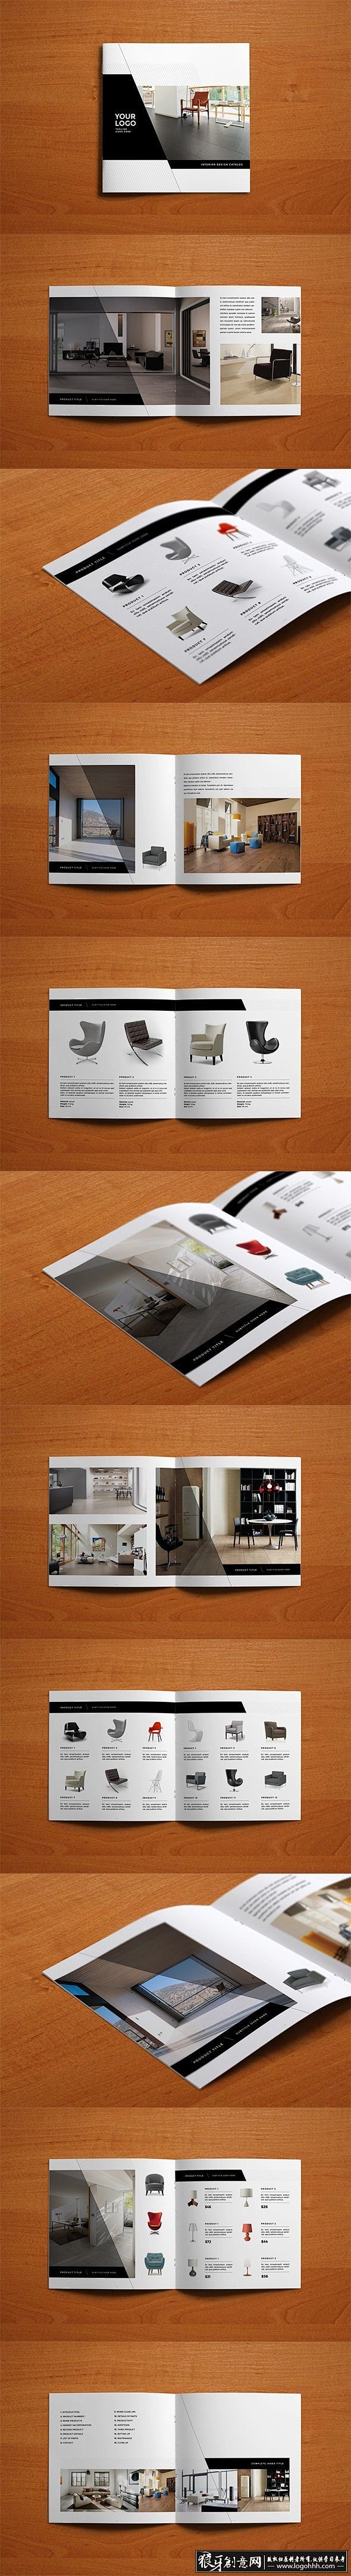 [创意画册] 家居画册 黑白风格画册设计...